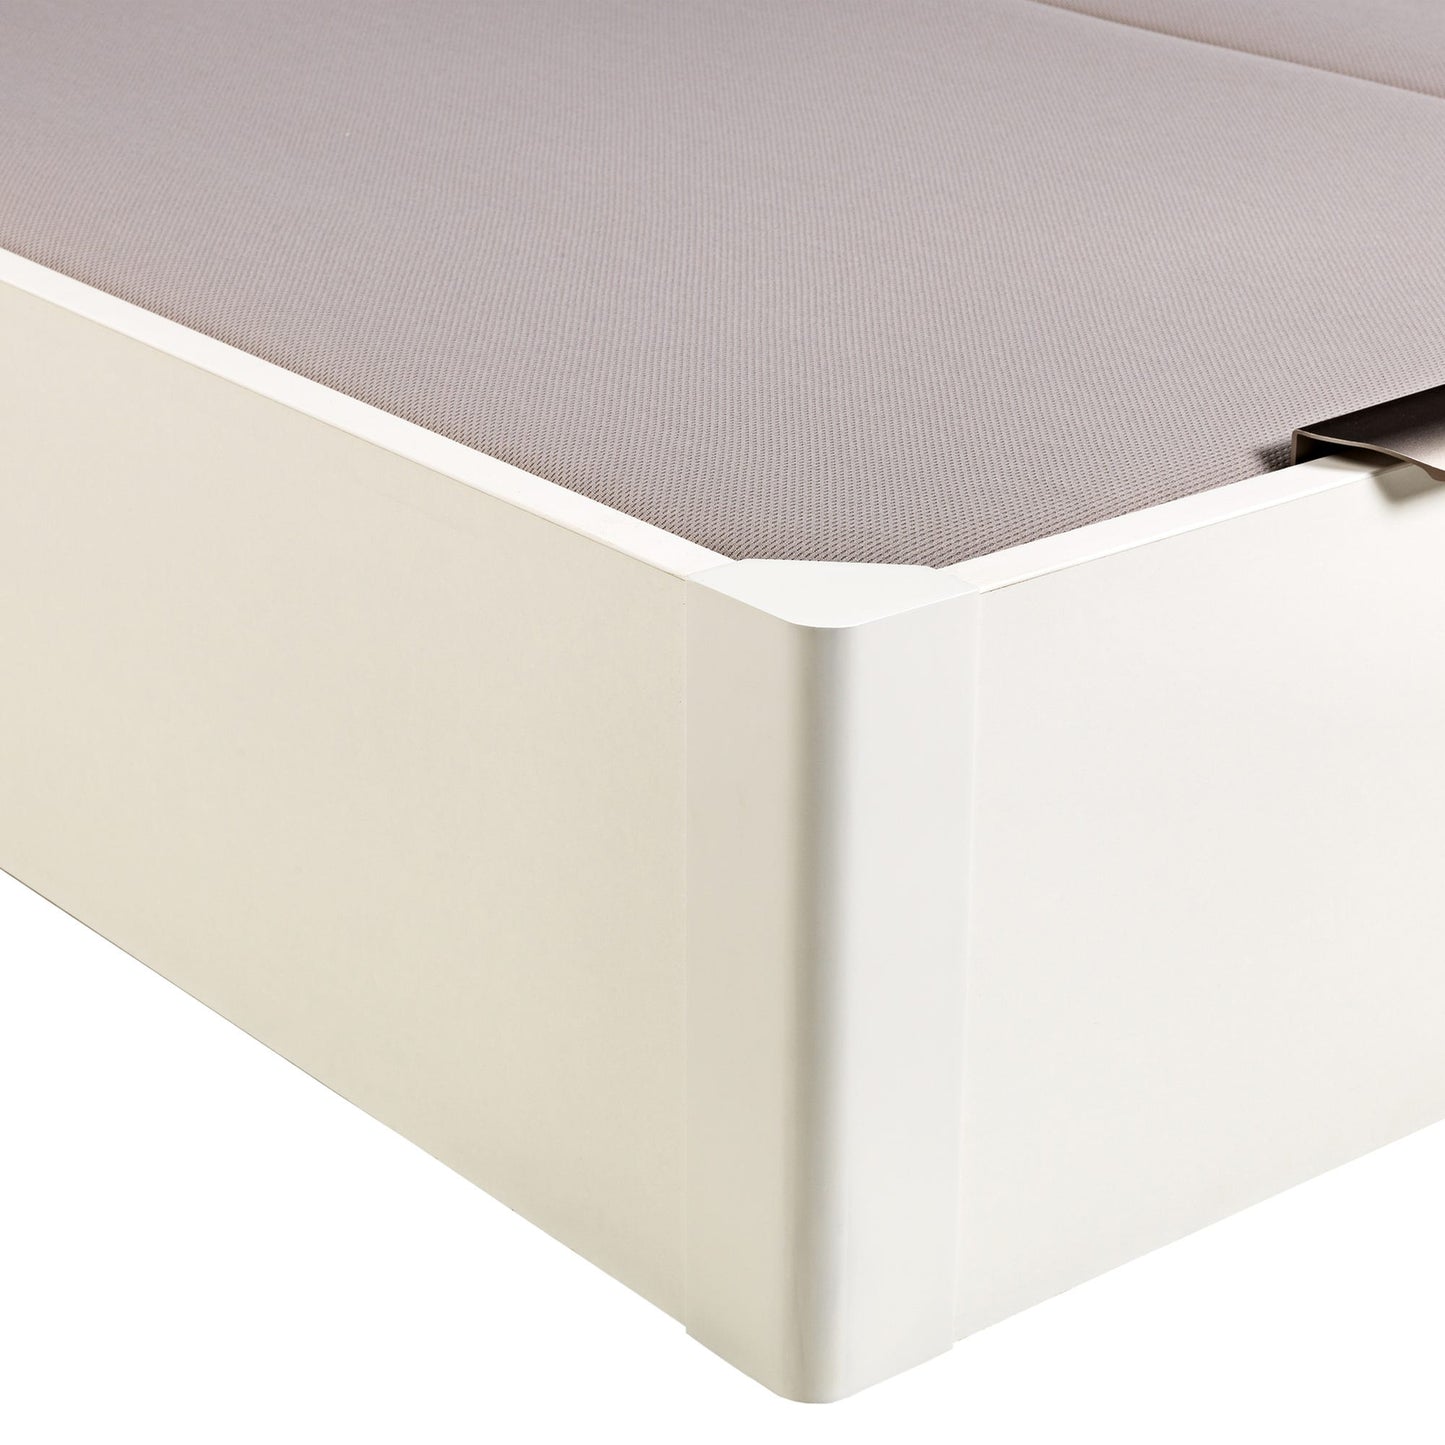 Canapé abatible de madera de tapa doble de color blanco - DESIGN - 200x200